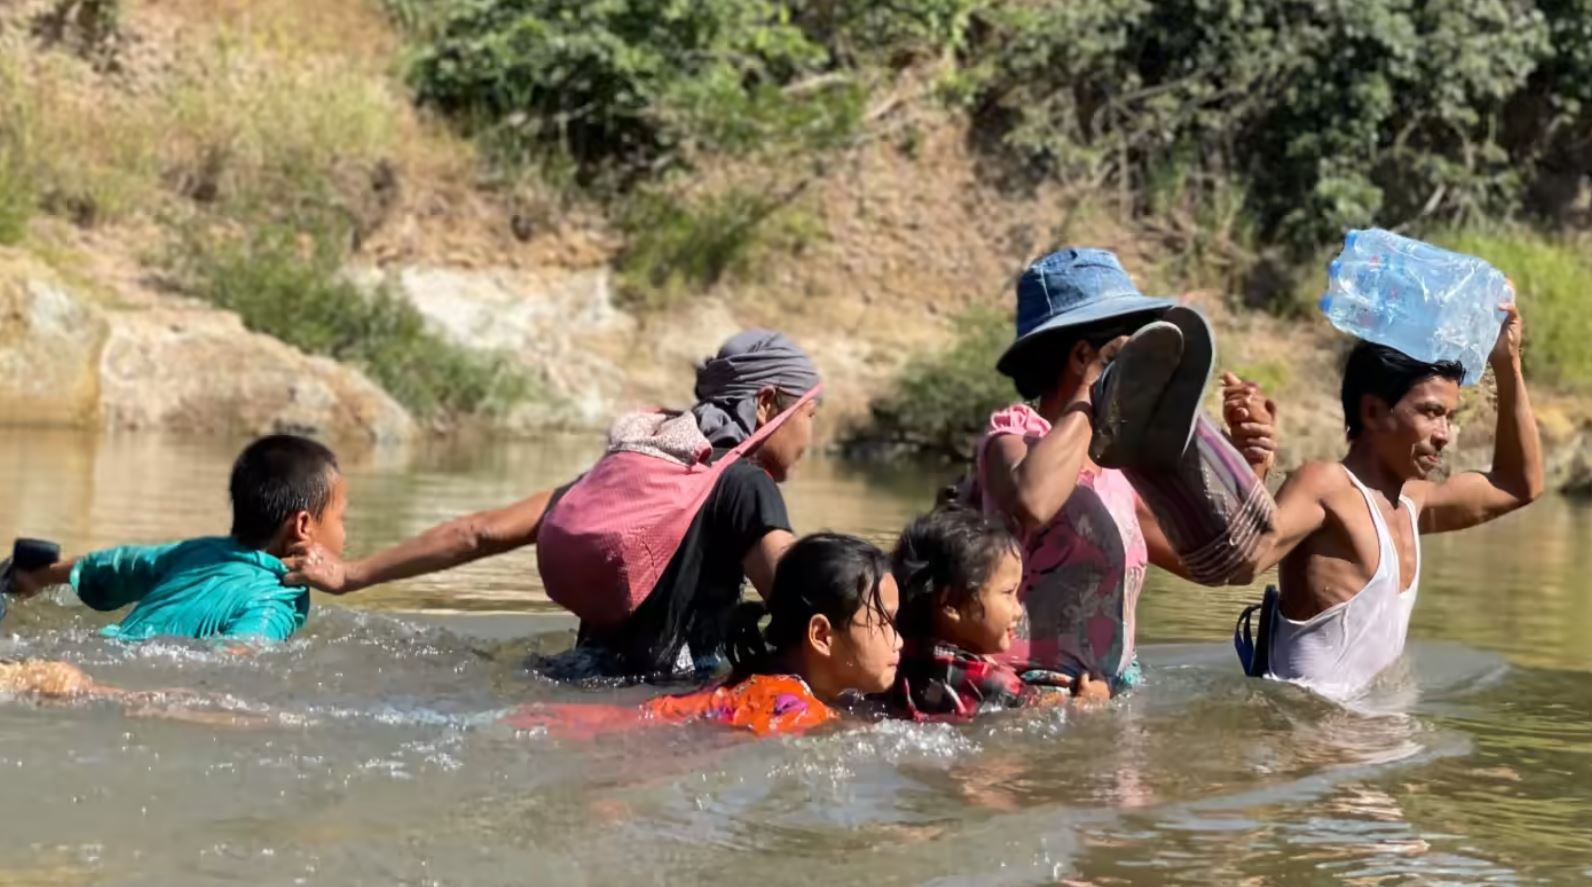 တိုက်ပွဲကြောင့် ထွက်ပြေးလာရသည့် စစ်ဘေးရှောင်အချို့။ ဓာတ်ပုံ - Free Burma Ranger